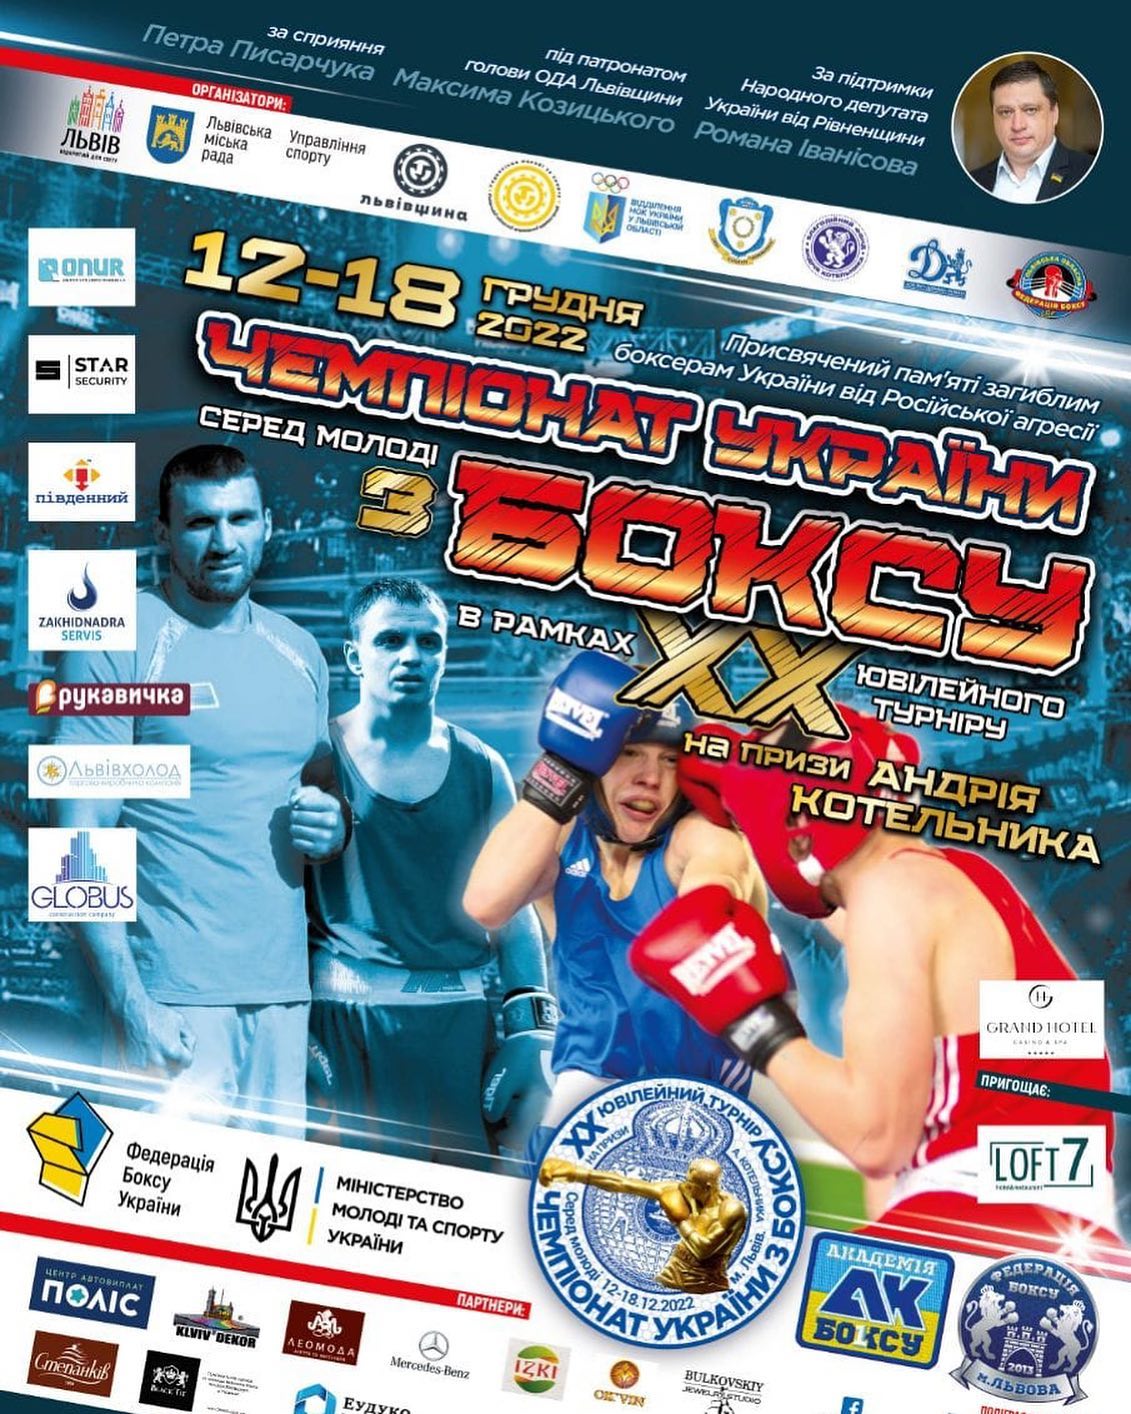 Спортсмени з Рівненщини візьмуть участь у Чемпіонаті України з боксу серед молоді, який відбудеться у Львові